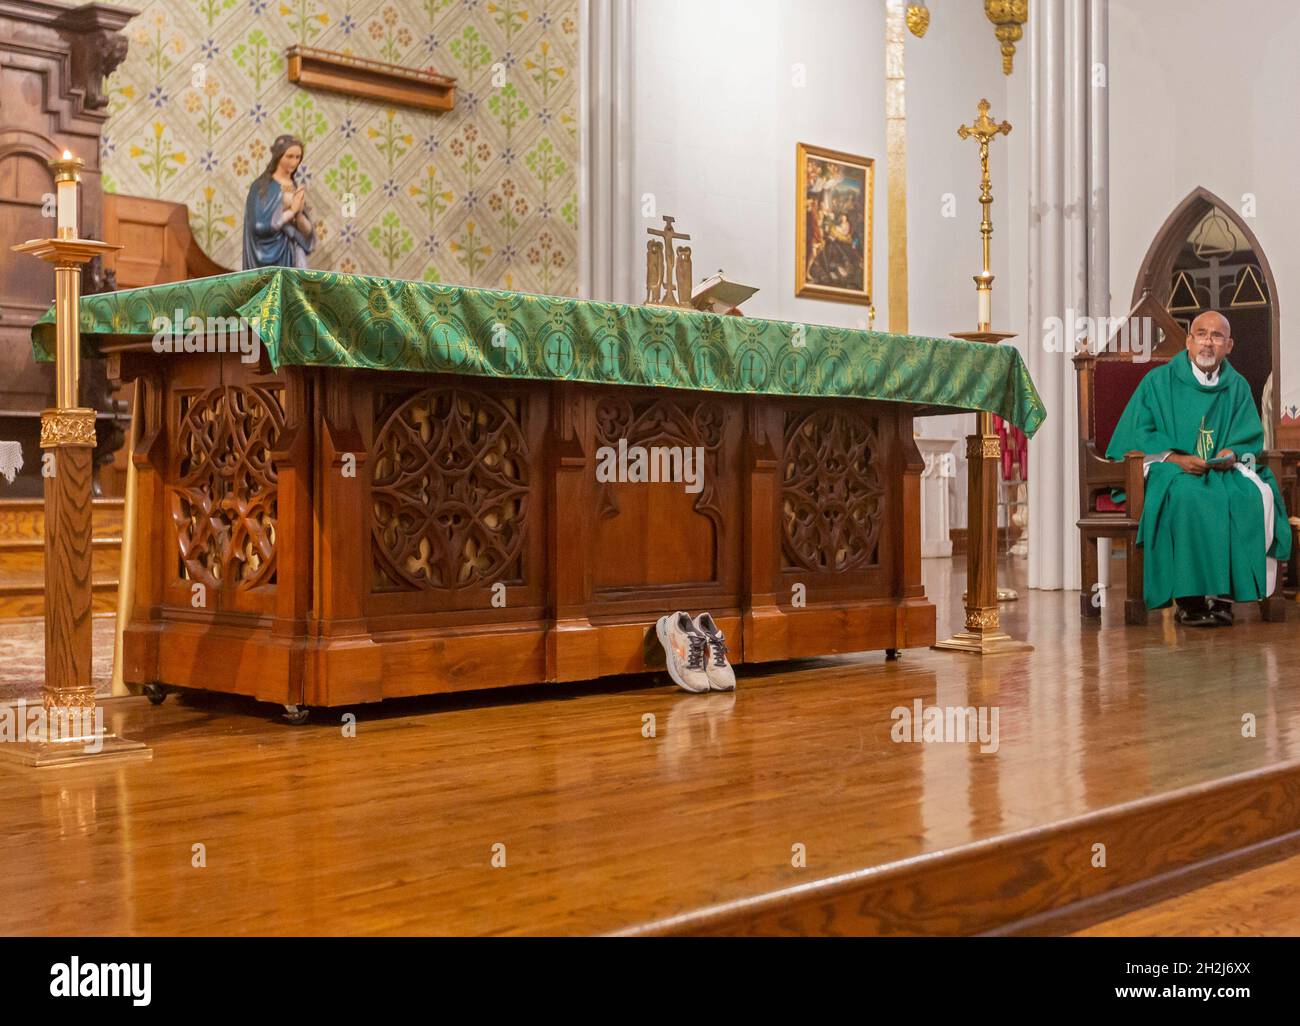 Detroit, Michigan - Une paire de chaussures pendant la messe à l'autel de la plupart des églises catholiques de la Sainte Trinité.Les chaussures ont été portées par un réfugié alors qu'elle voyageait en Banque D'Images